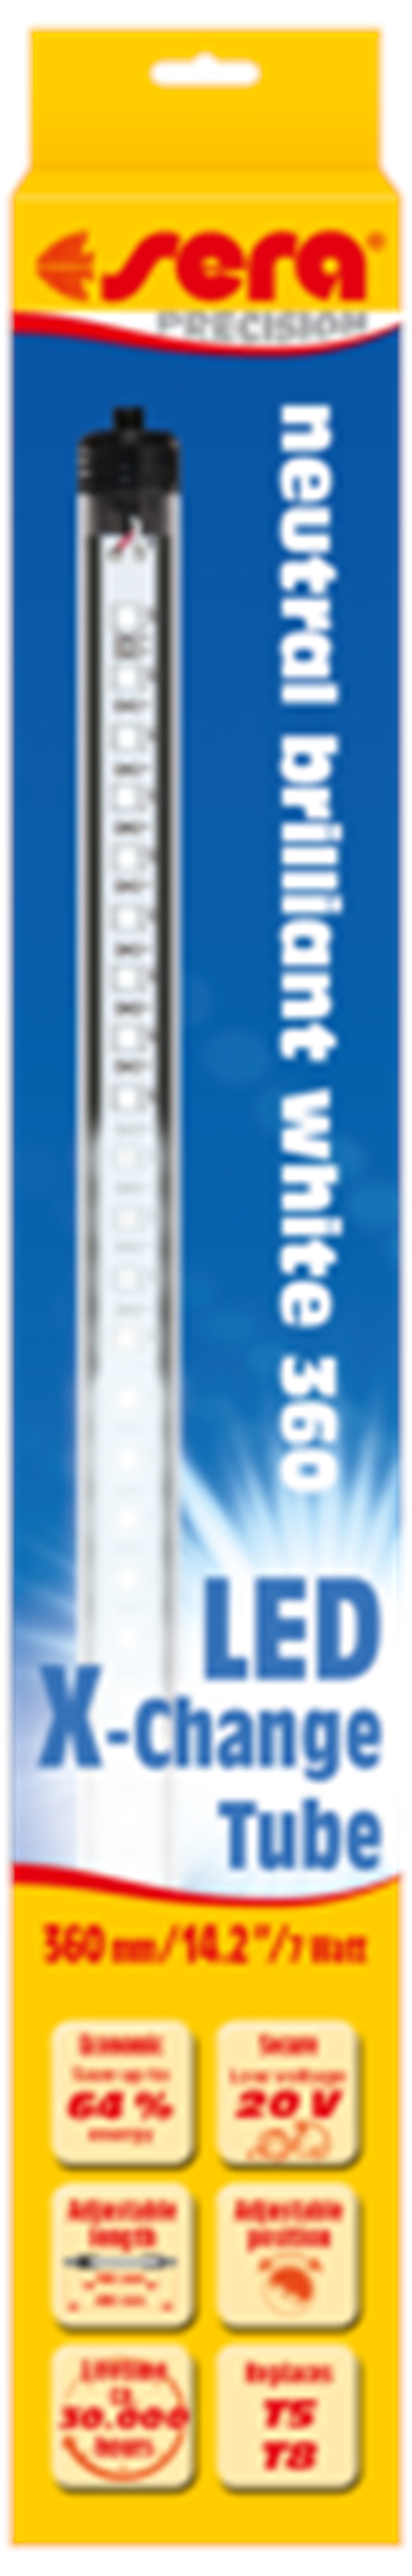 sera LED neutral brilliant white 820 mm / 12,3 W